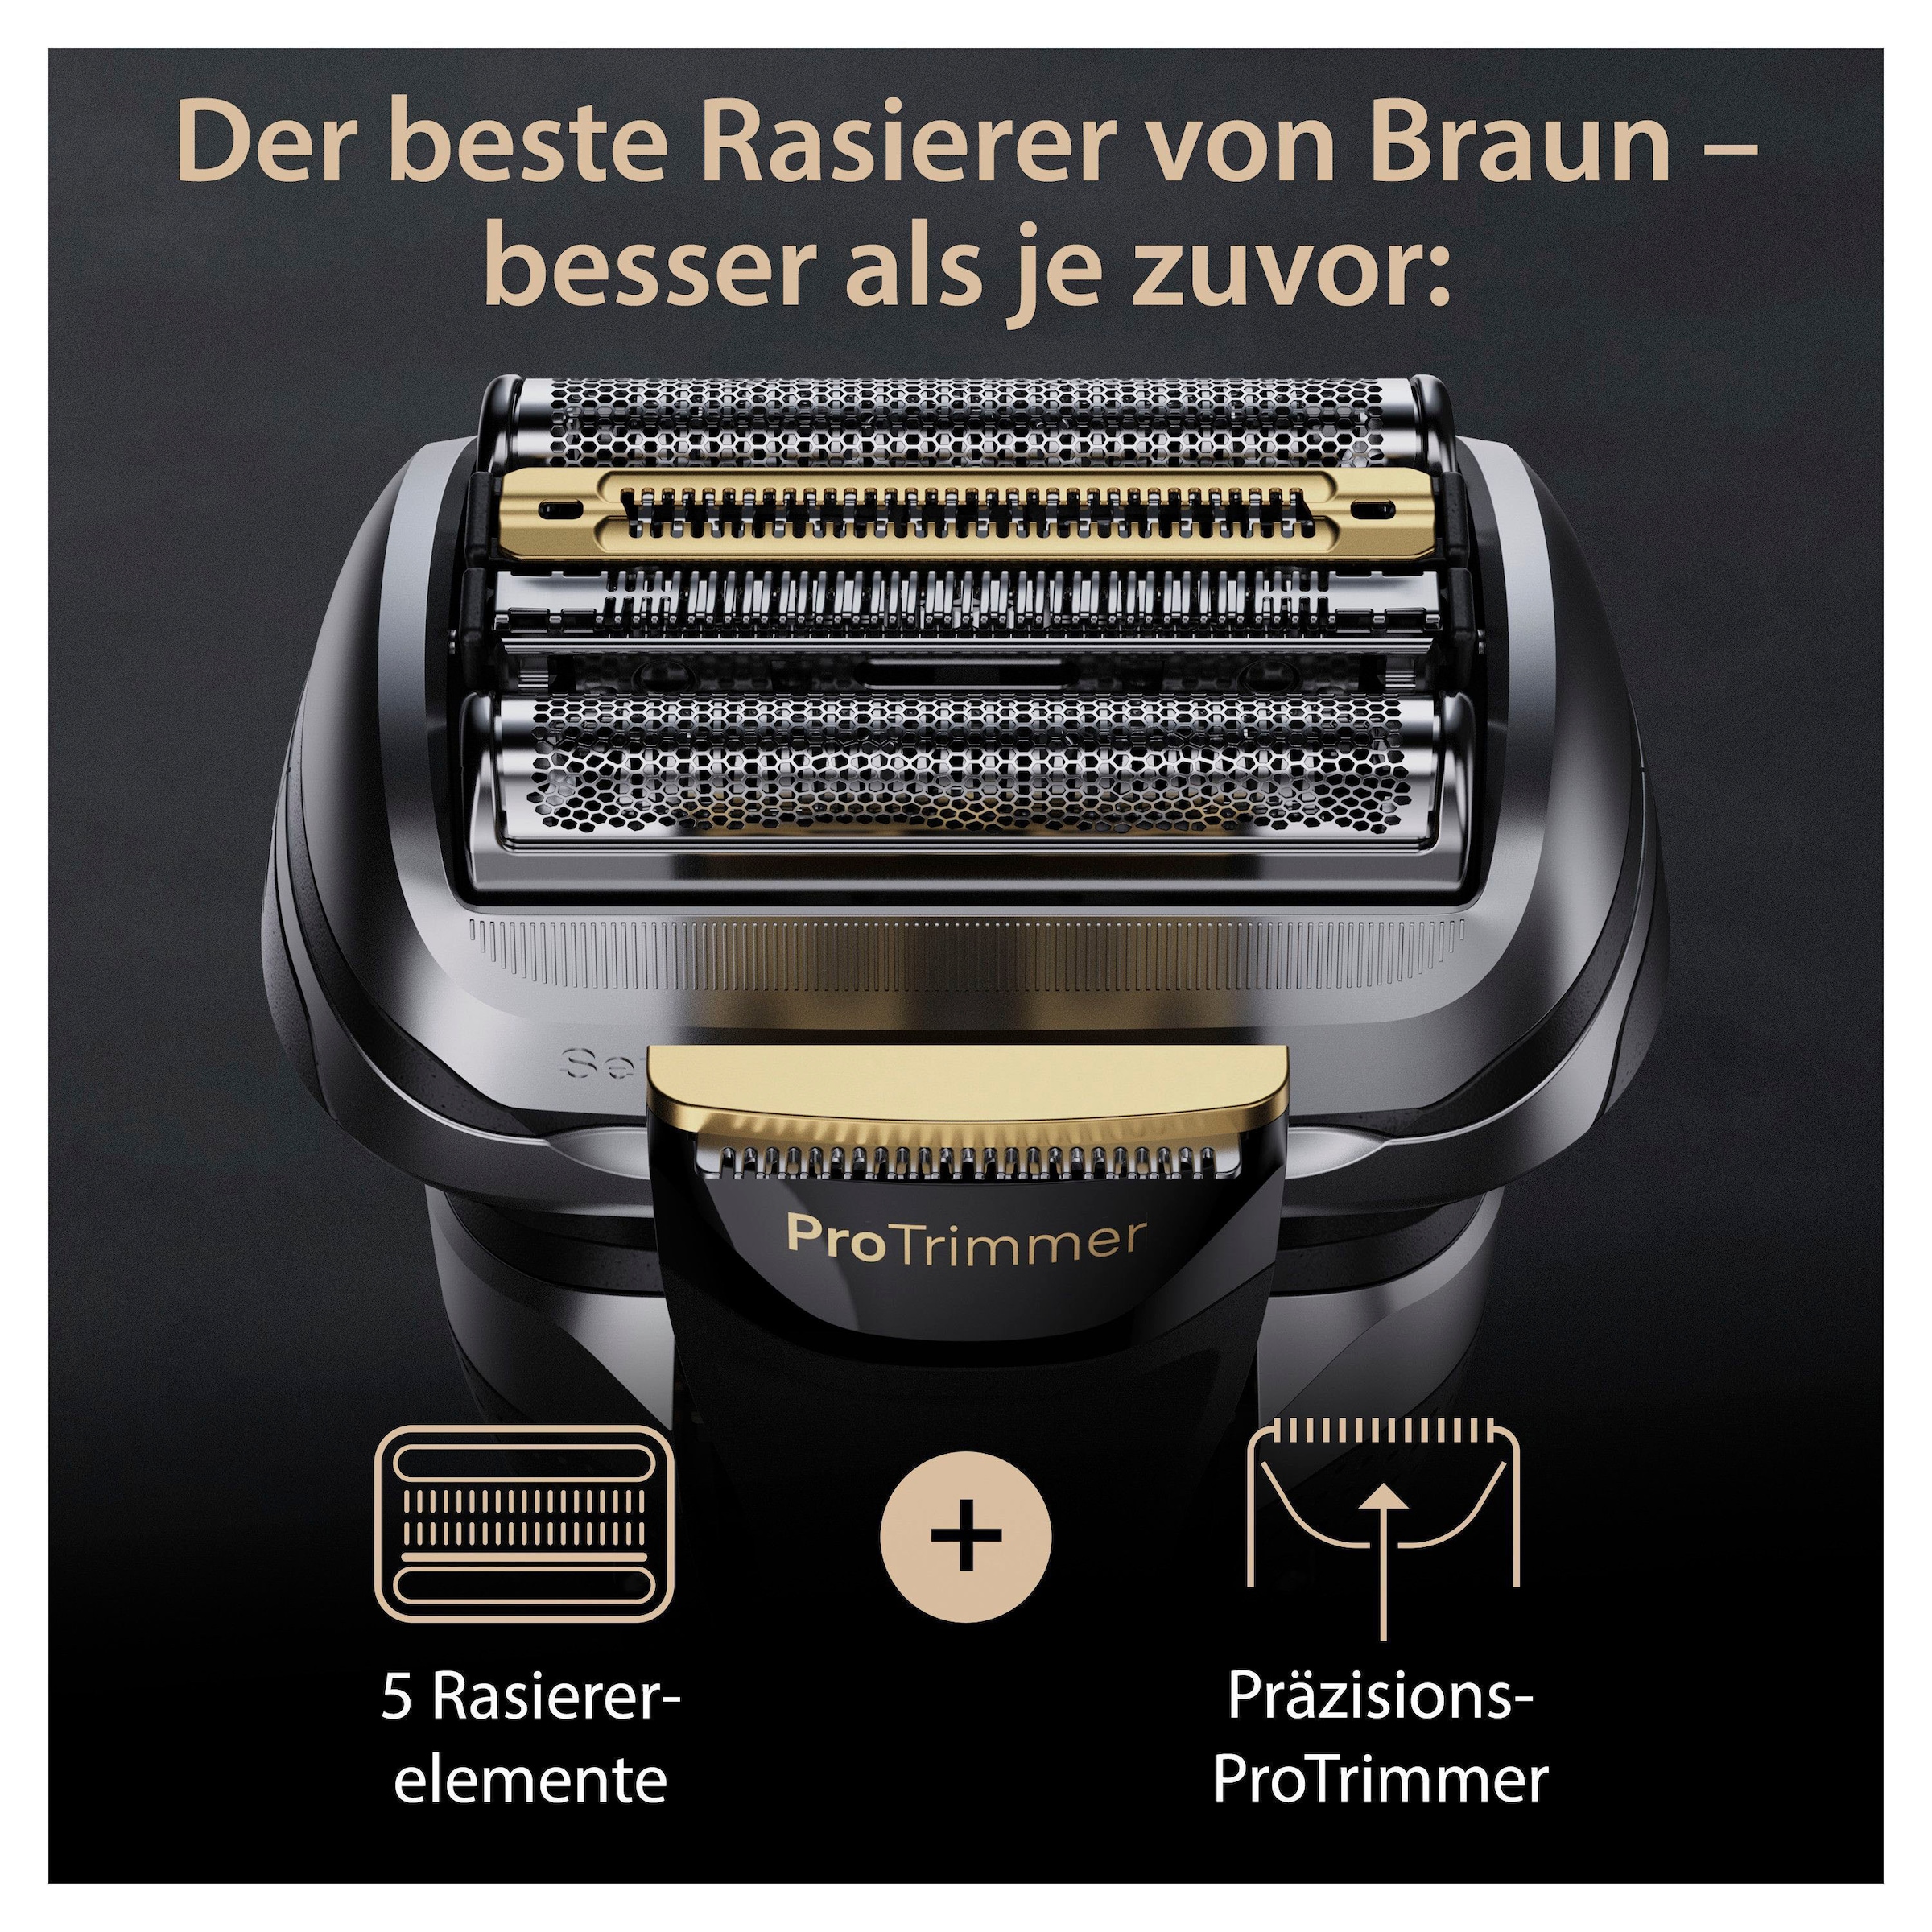 Braun Elektrorasierer »Series Precision Pro+ 9 online ProTrimmer bestellen 9527s«